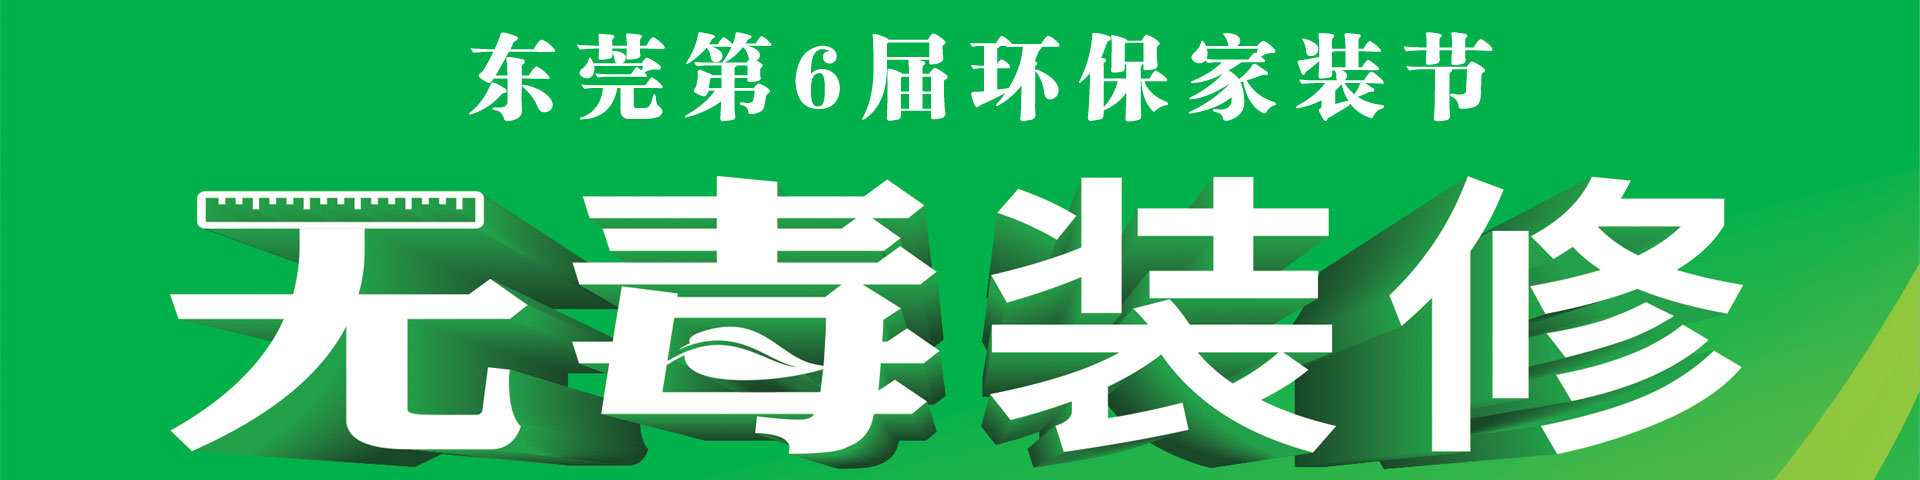 东莞鲁班主办第六届环保家装节